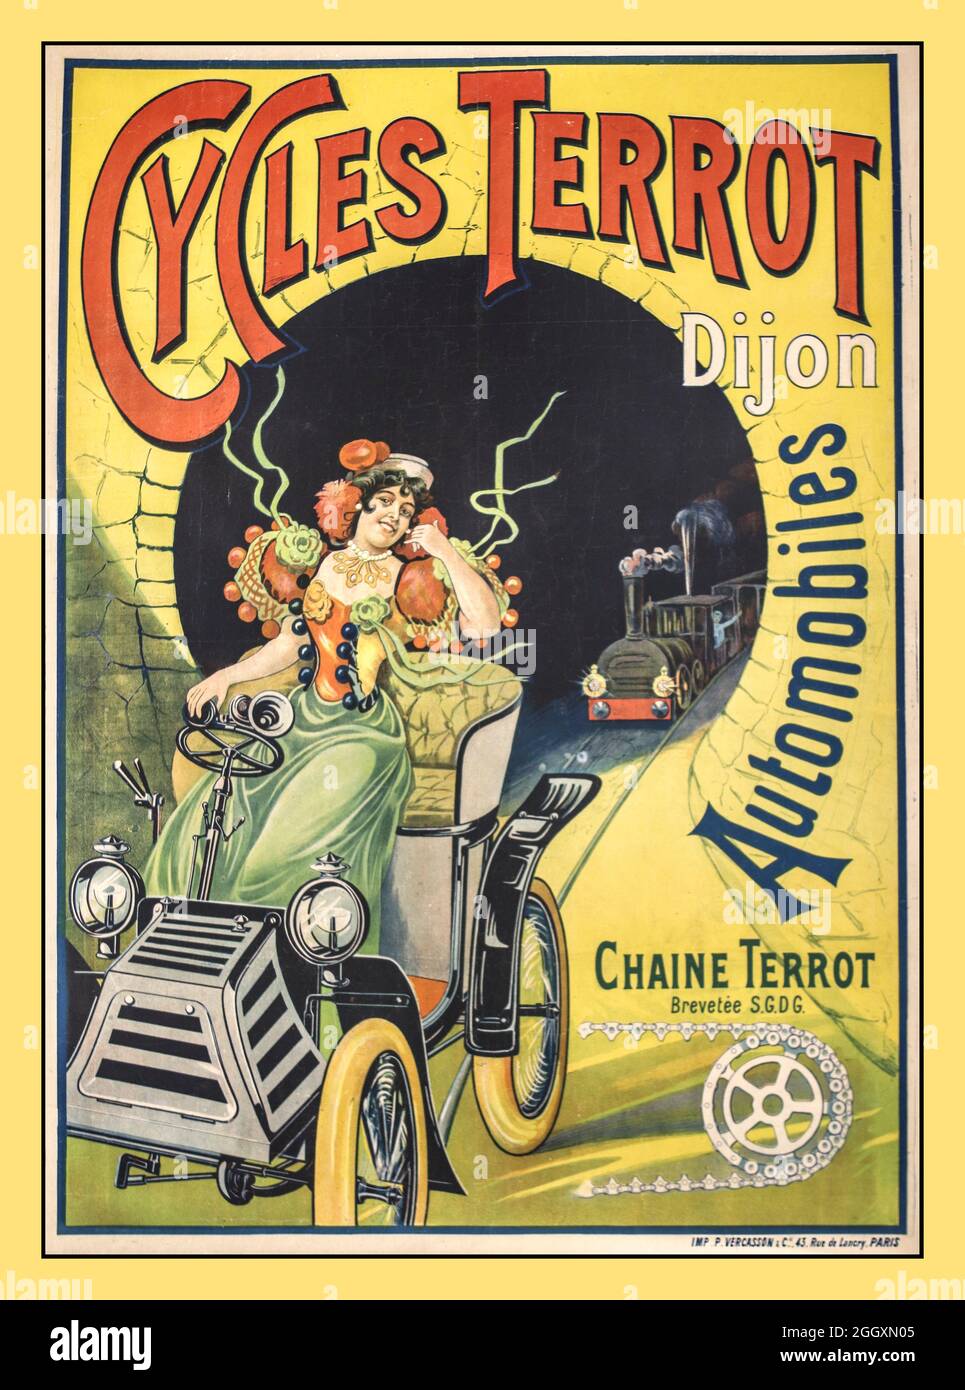 Vintage 1900s affiche française "cycles Terrot Dijon automobiles'avec Chaine Terrot affiche lithographique imprimé par: P. Vercasson & Cie., 43, rue de Lancry, Paris France du: c.1900 Banque D'Images